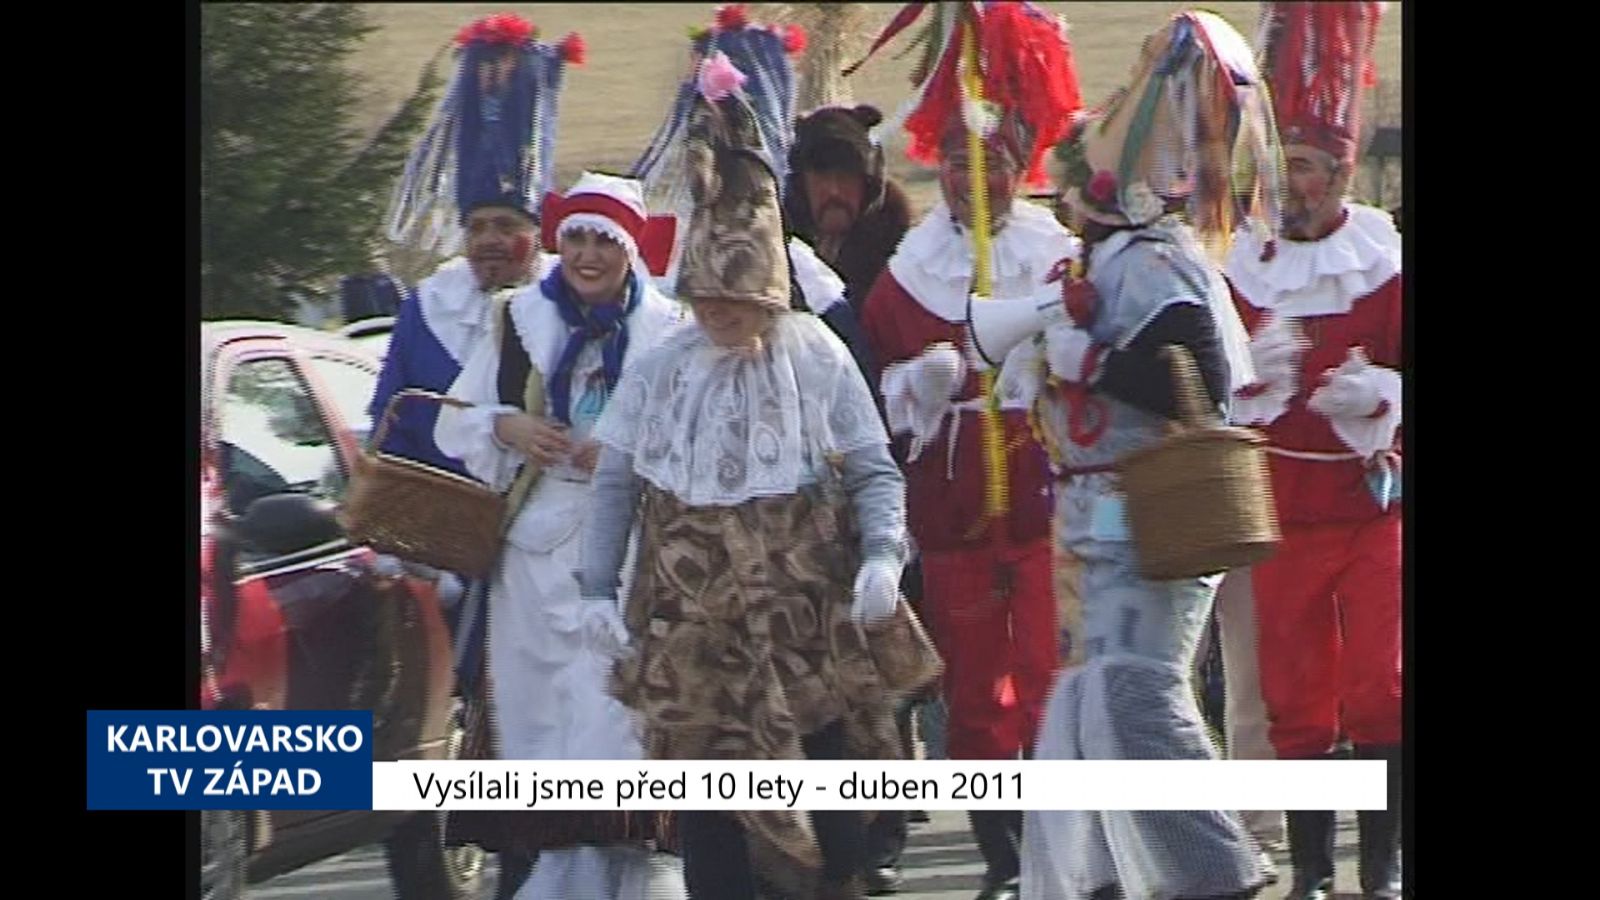 2011 – Tuřany: Masopust se nesl ve znamení tradic (4333) (TV Západ)